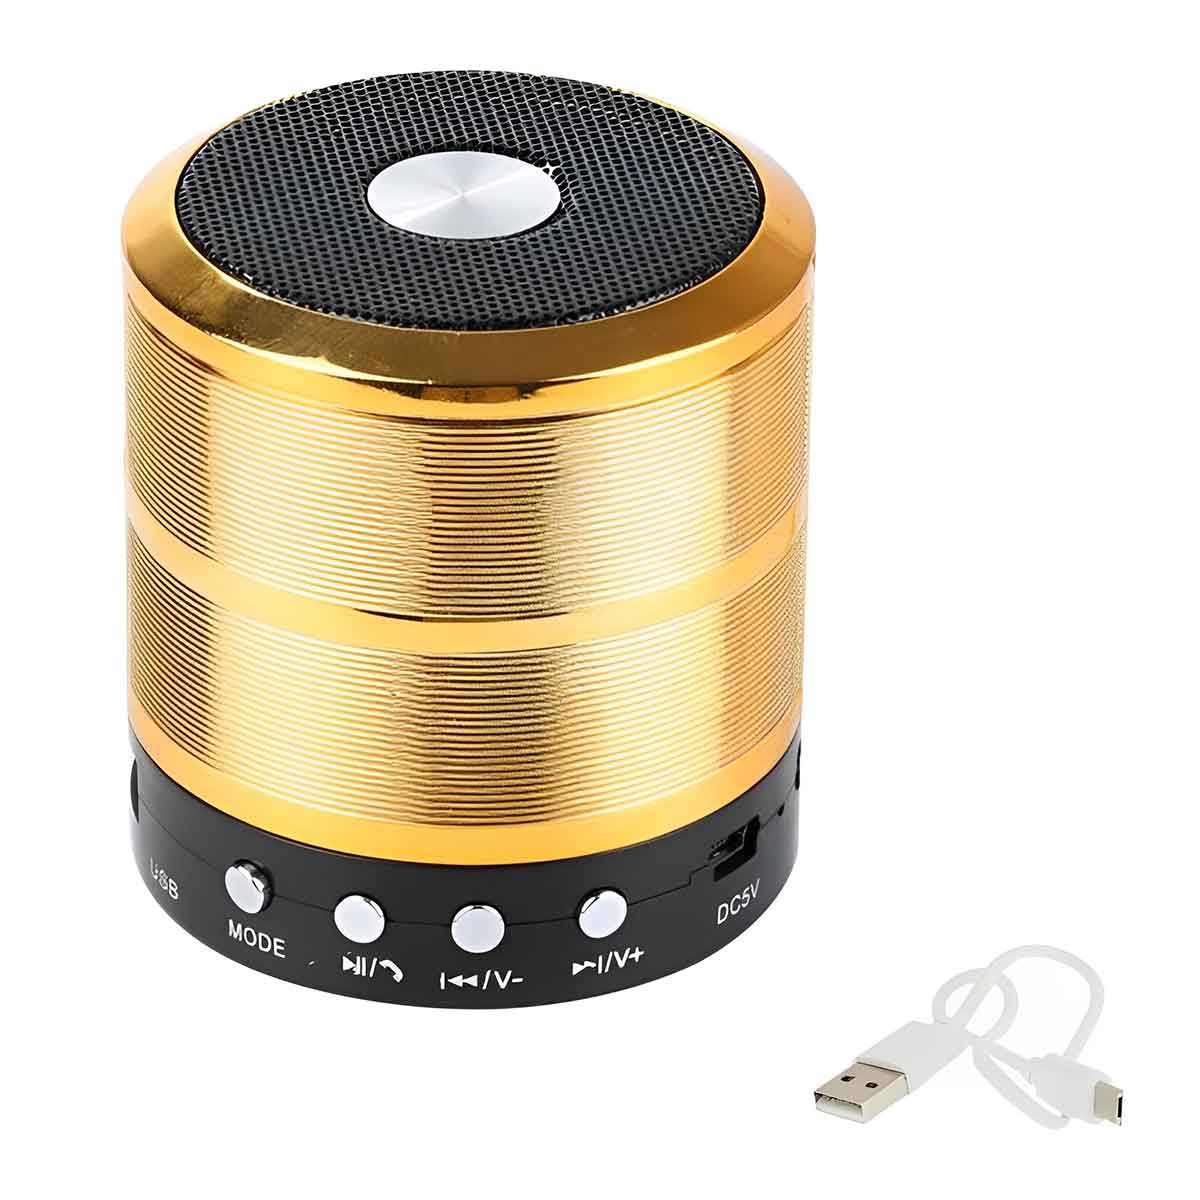 Φορητό Ασύρματο Ηχείο Bluetooth 5W με Διάρκεια Μπαταρίας έως 3 Ώρες USB/TF/FM WS-887 Χρυσό